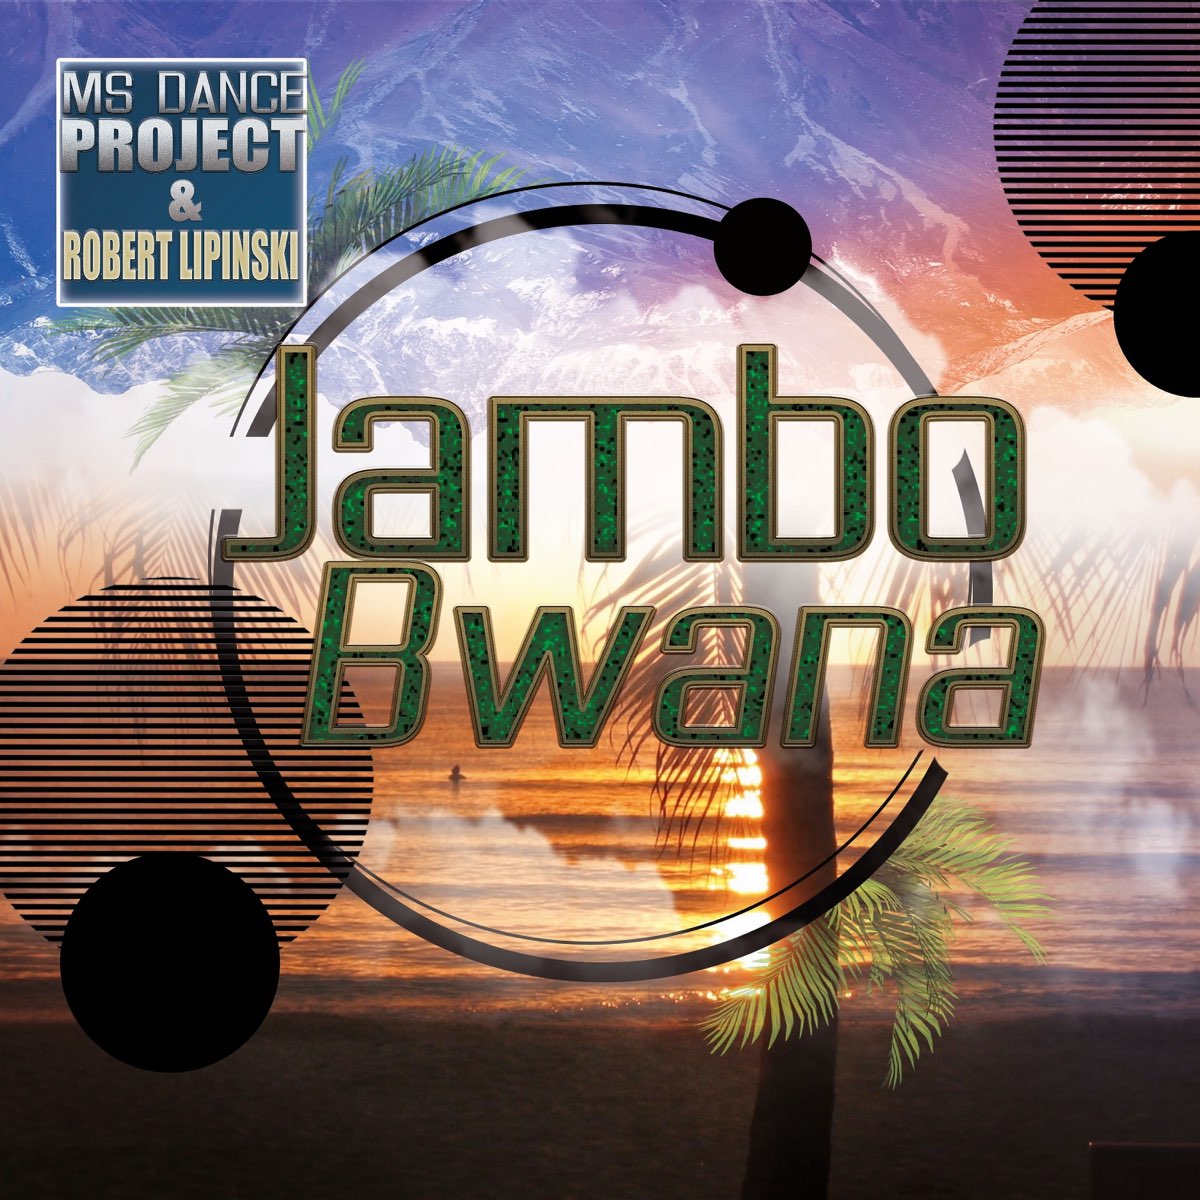 ‎Jambo Bwana - Single by MS Dance Project & Robert Lipinski on Apple Music